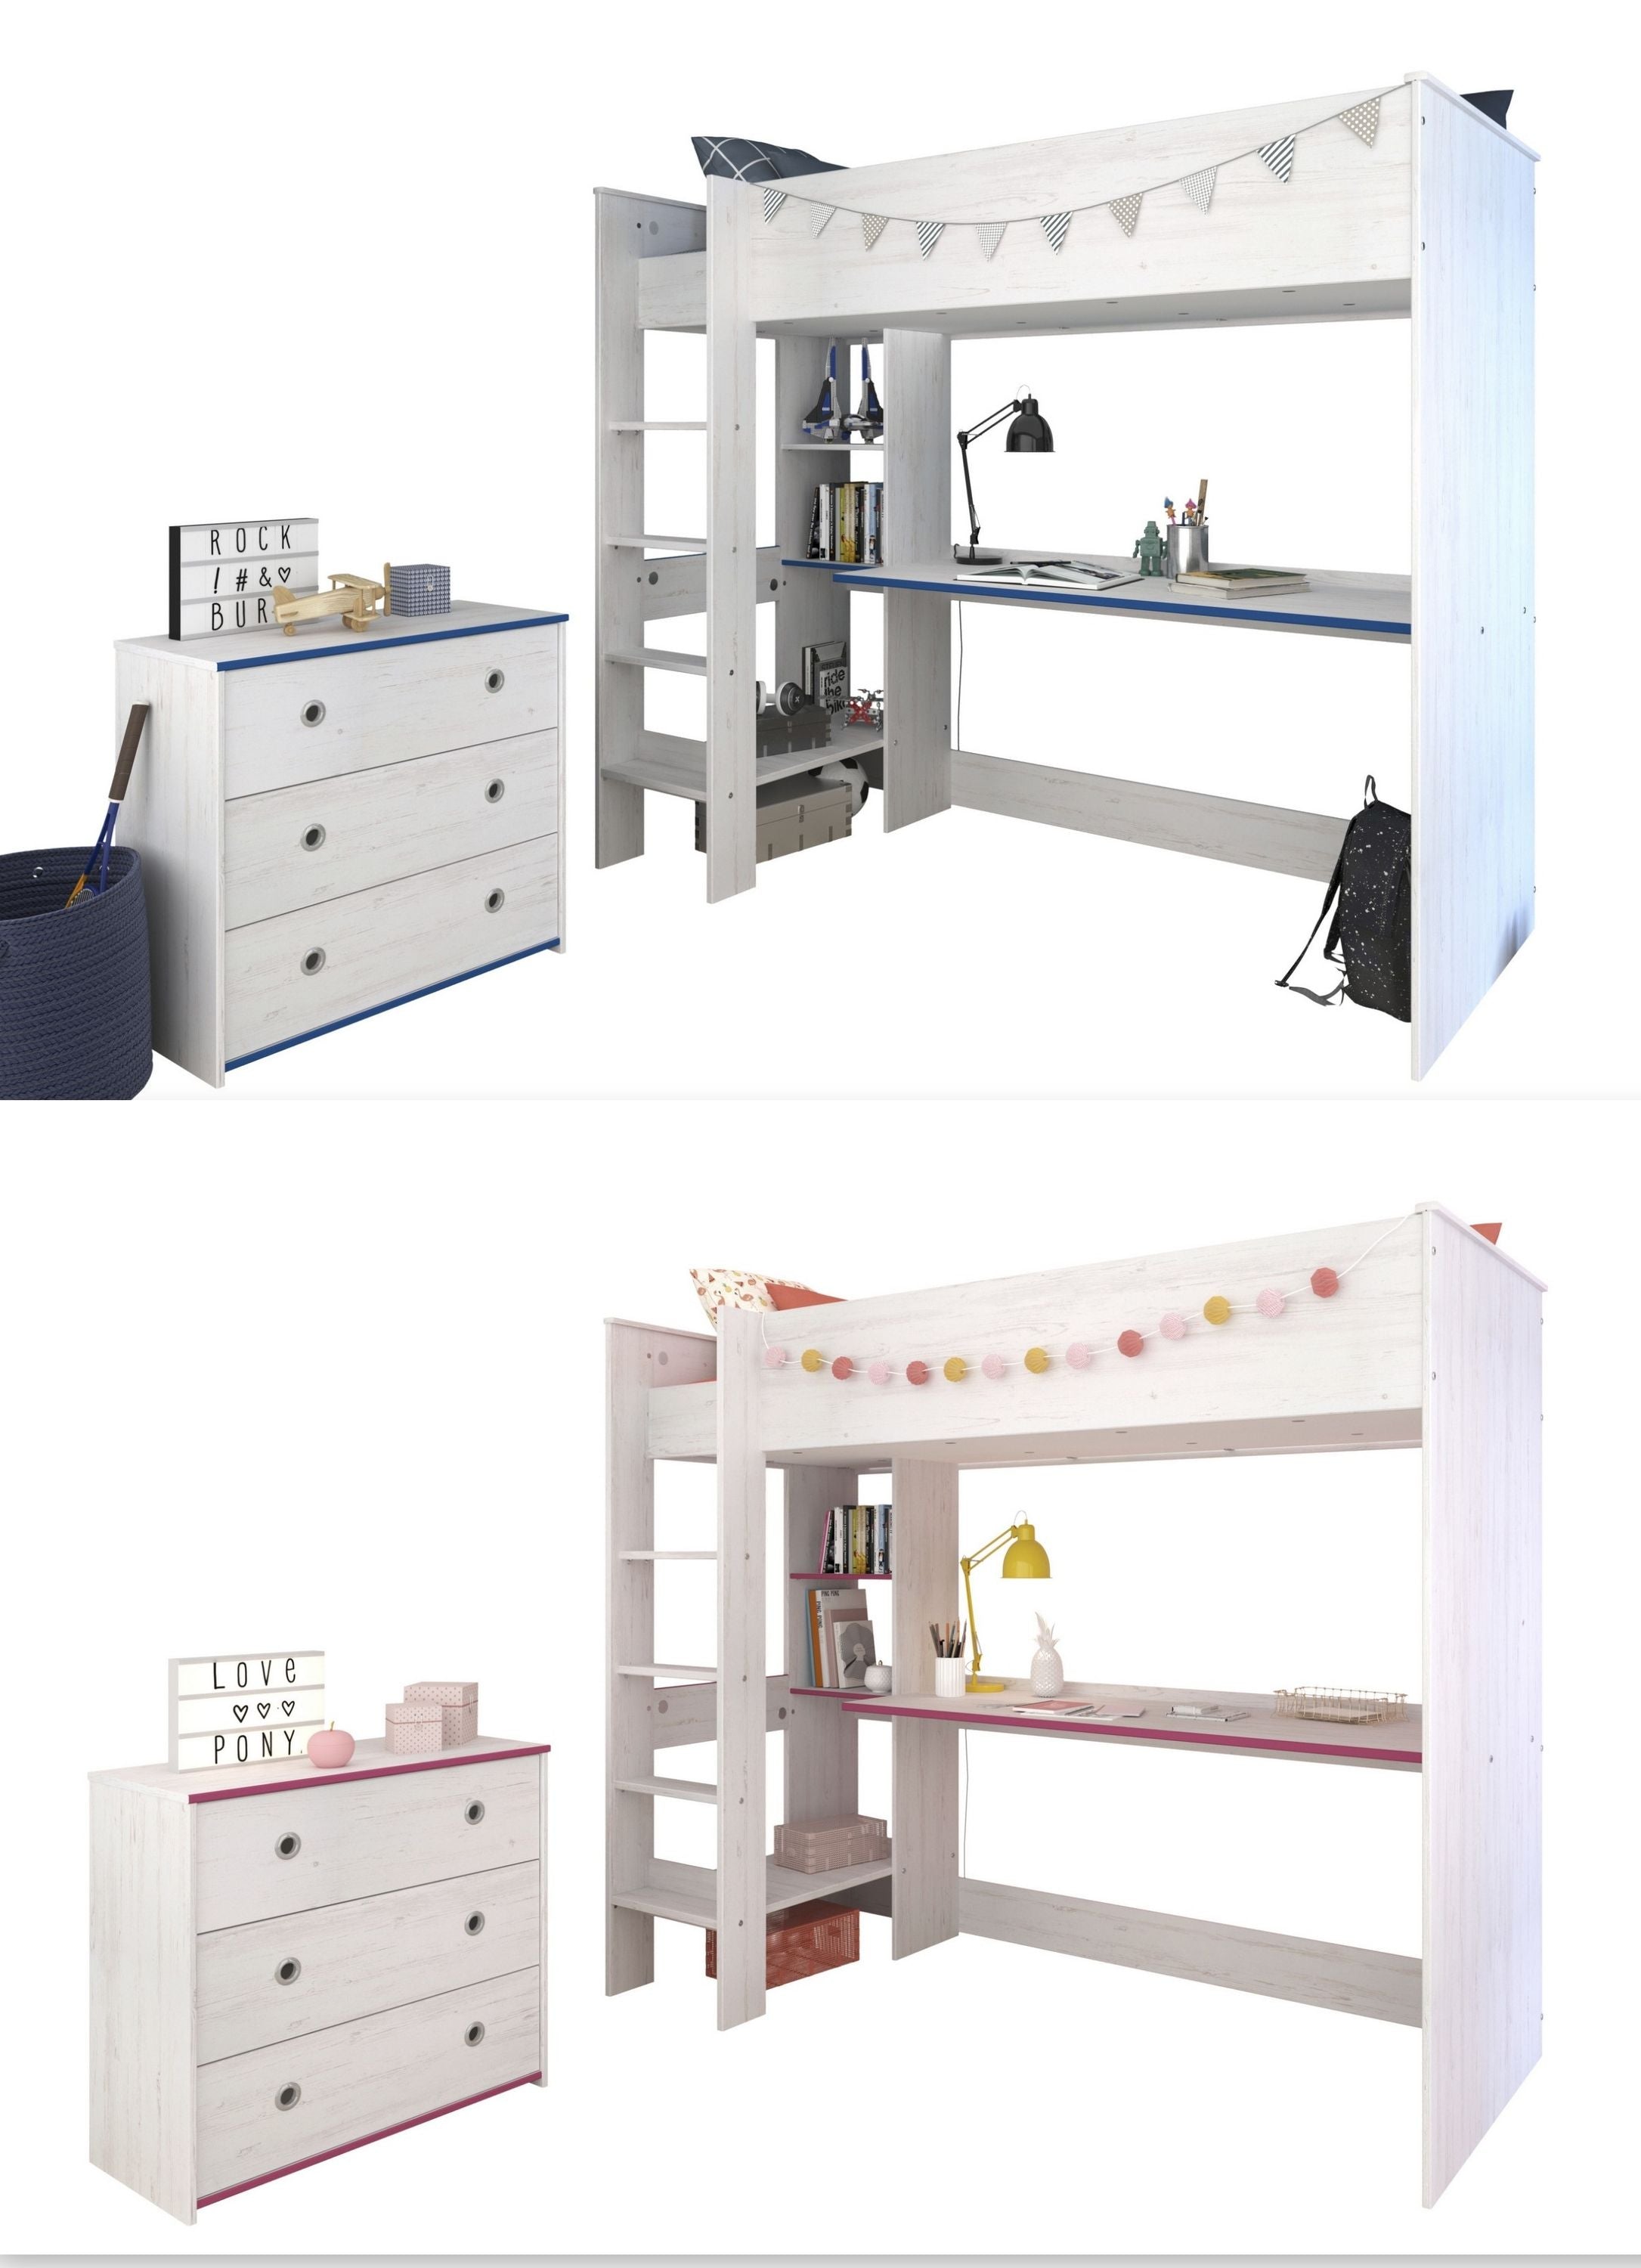 Kinderzimmer Smoozy 29 Parisot 2-teilig weiß - pink - blau Bett + Kommode + Schreibtisch